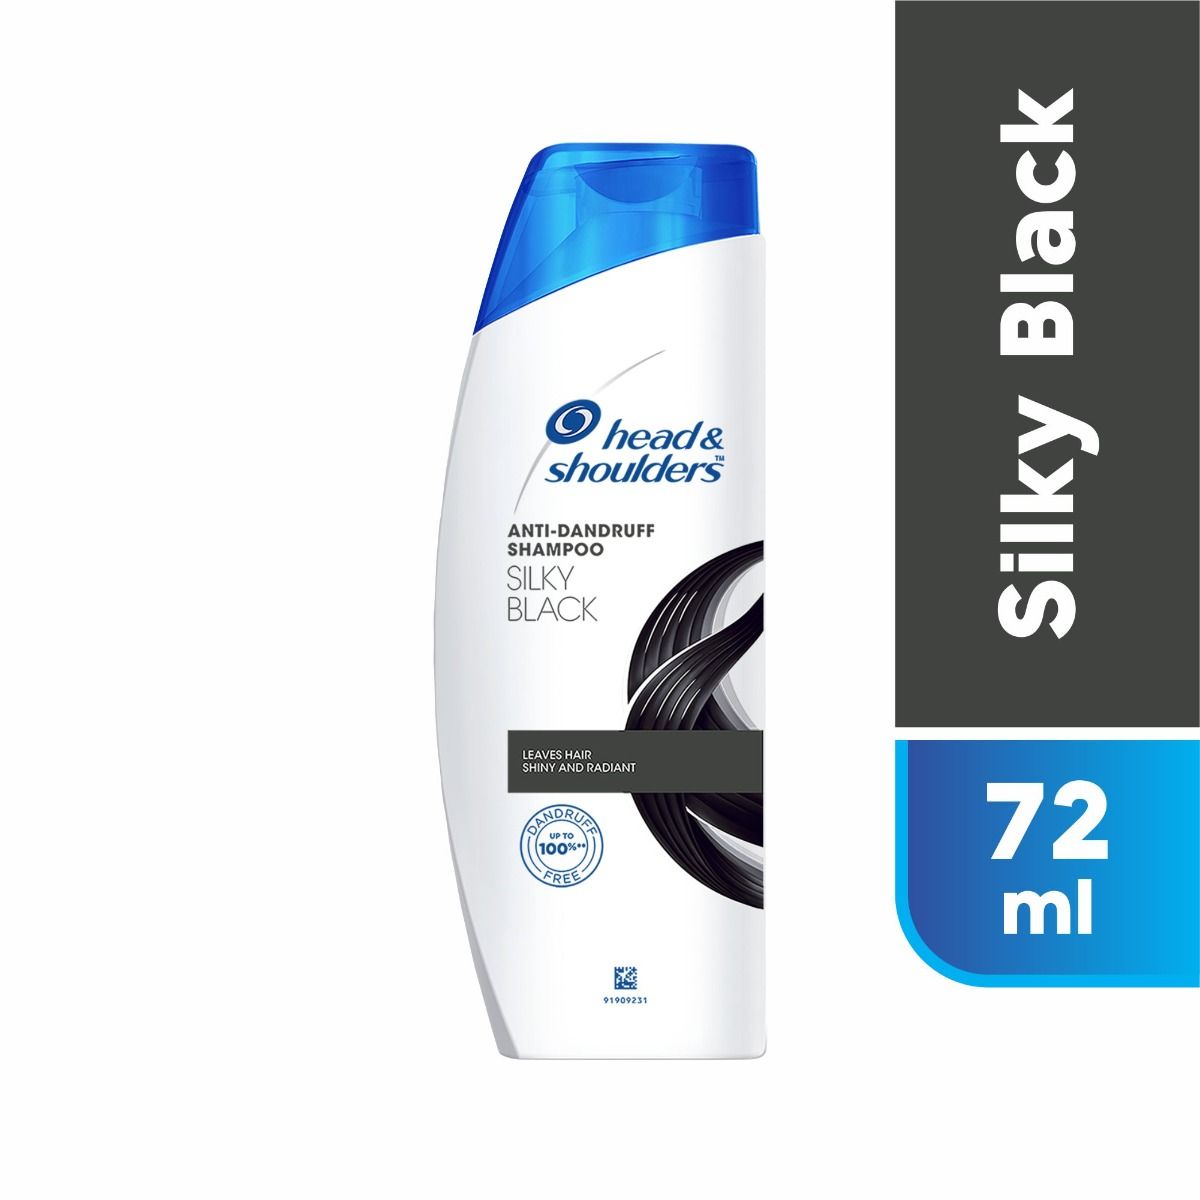 Head & Shoulders Anti-Dandruff Silky Black Shampoo, 72 ml, Pack of 1 